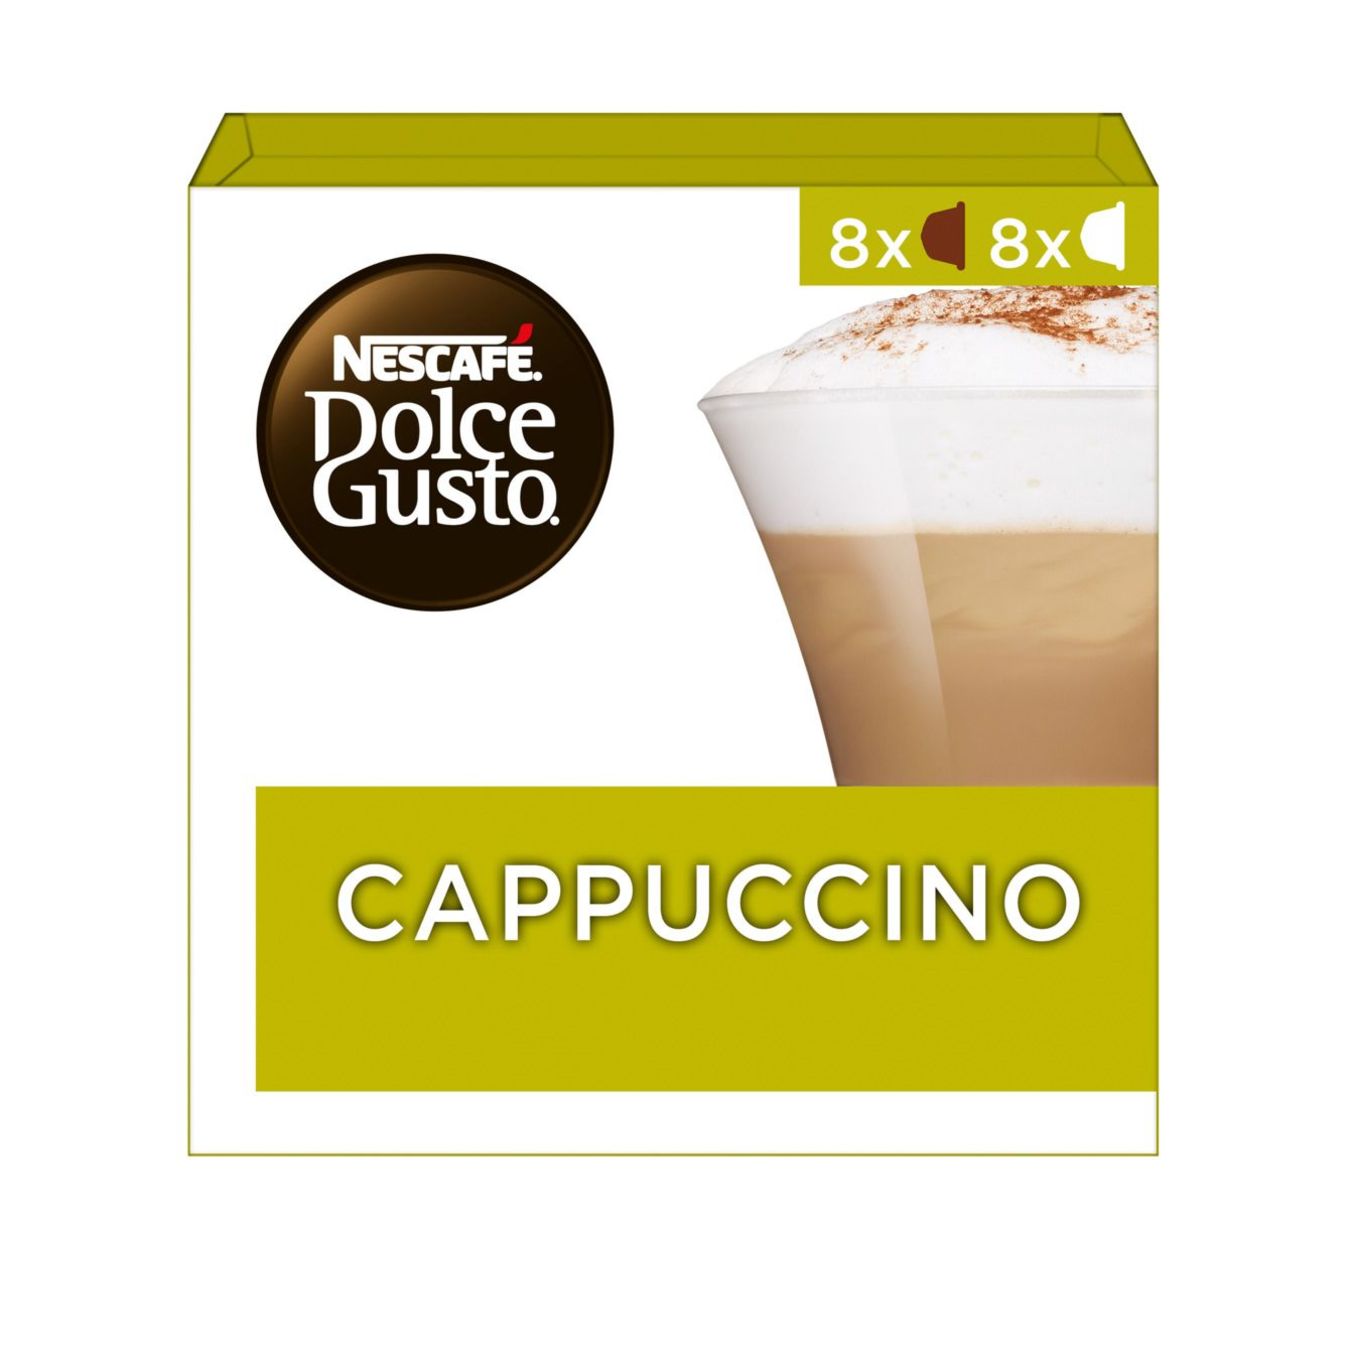 Automatisering kubus Verliefd Nescafé Dolce gusto cappuccino capsules online bestellen? | Coop.nl | Coop